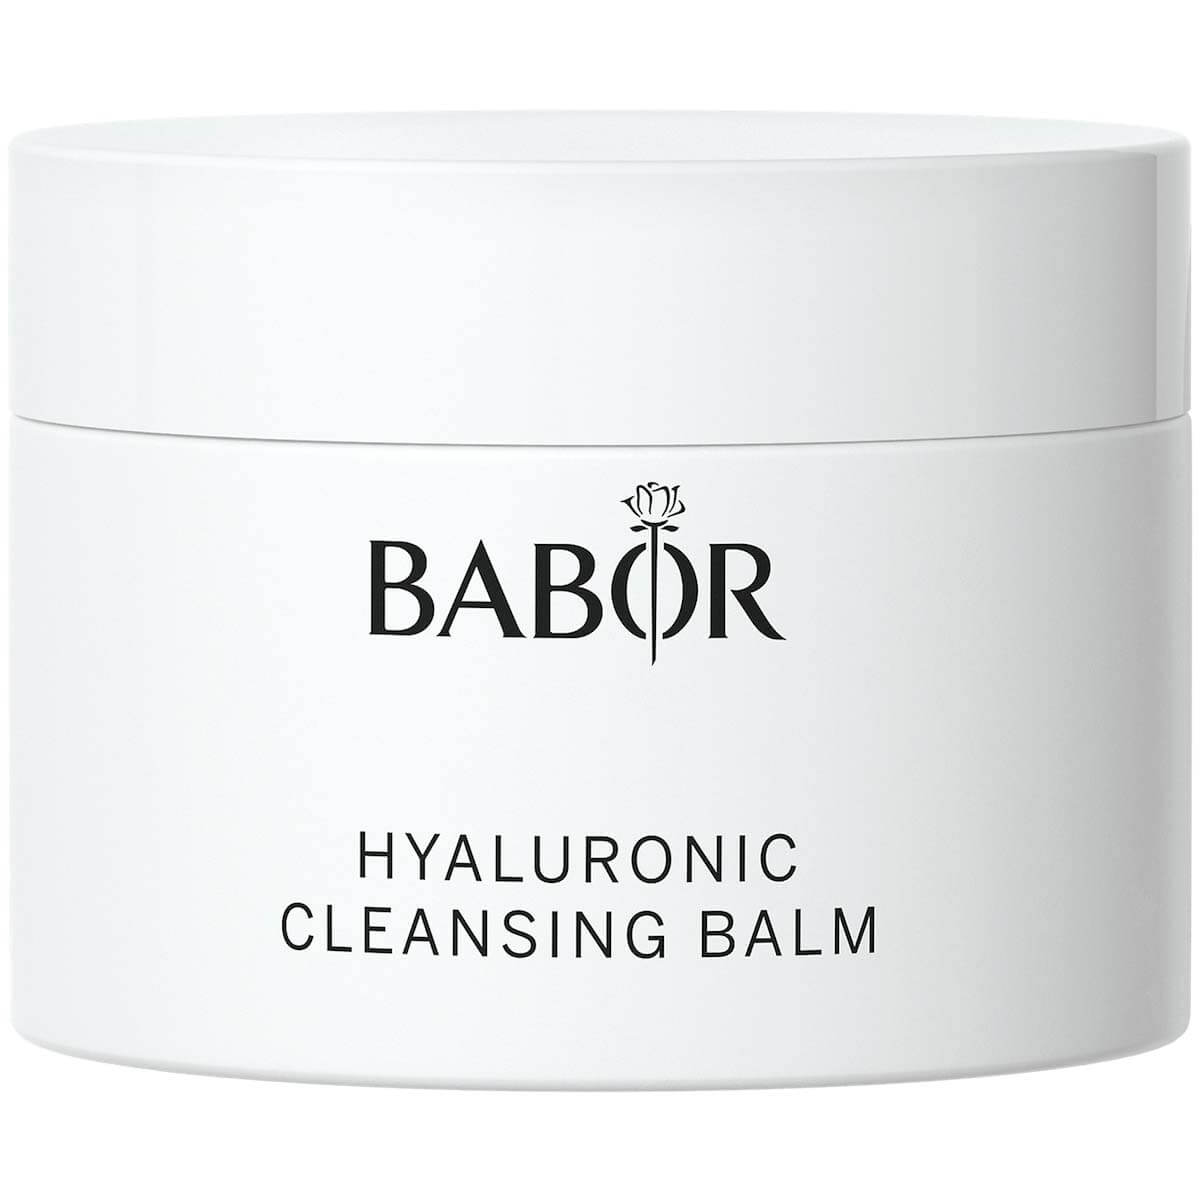 Очищающий бальзам с гиалуроновой кислотой BABOR Hyaluronic Cleansing Balm очищающий бальзам cleansing balm